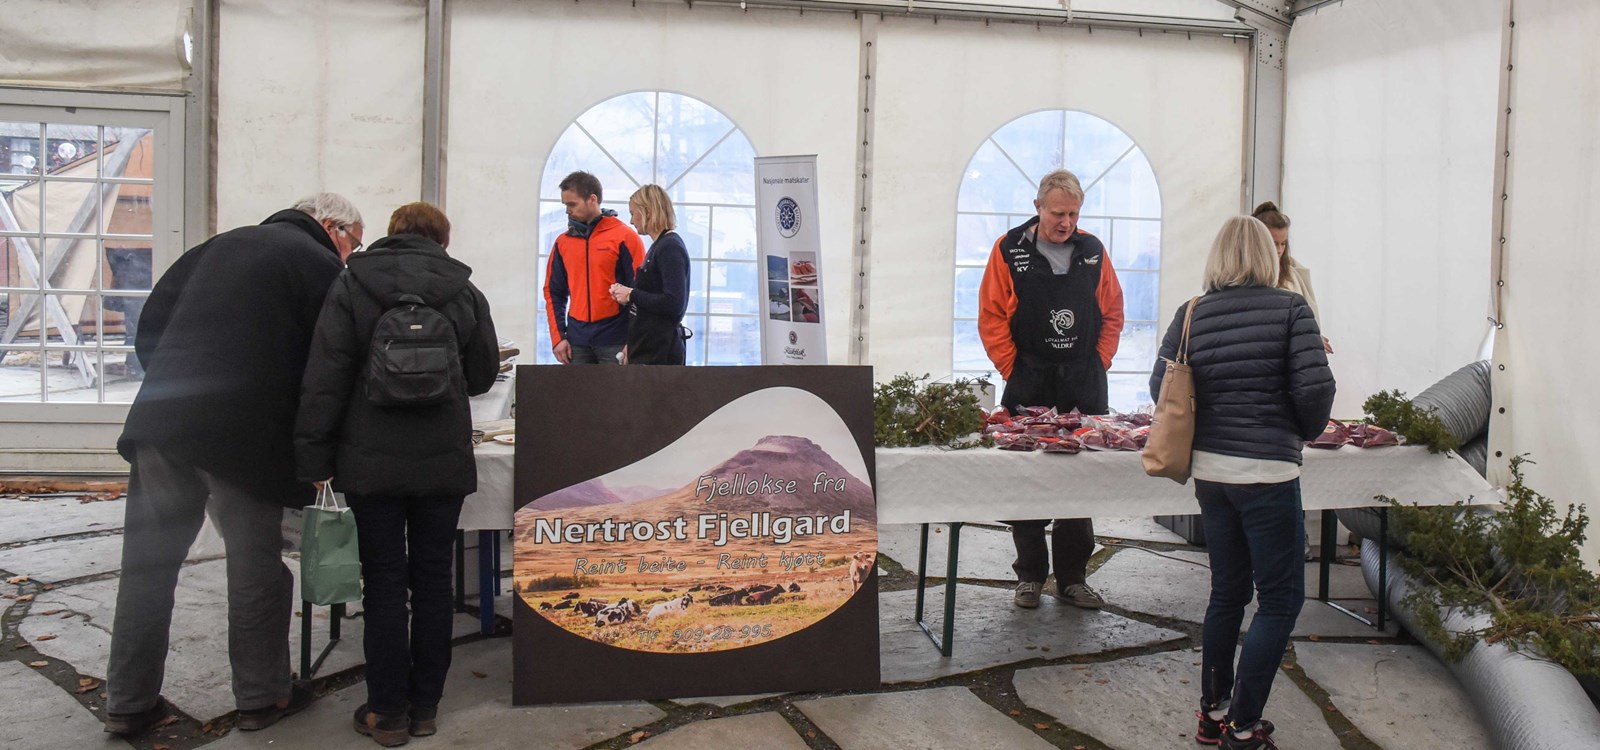 Nertrost fjellgard var på plass med sin fjellokse som har beita heile sumaren i Smådalen i Vang.  Foto: valdres.no/Nils Rogn